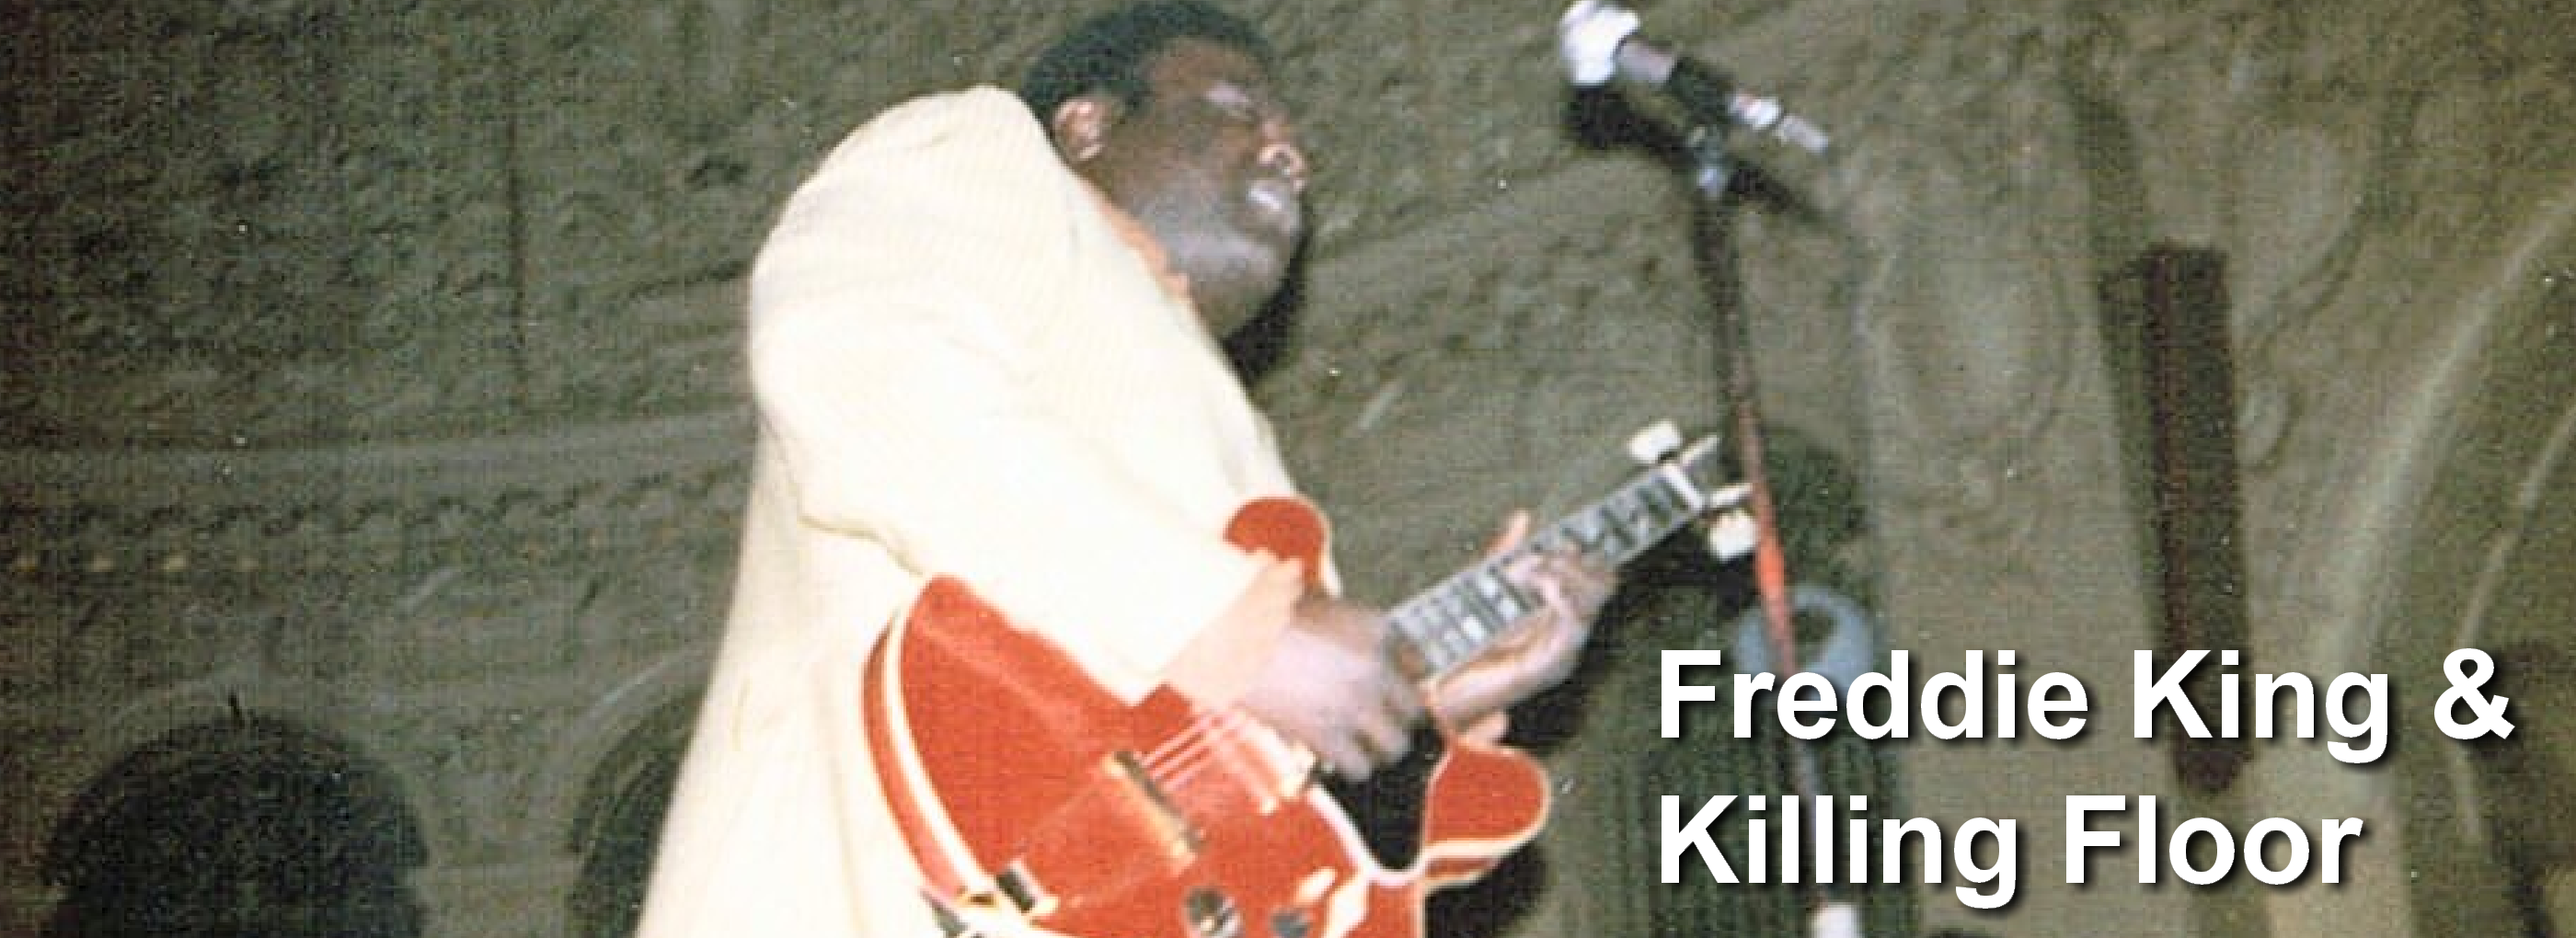 Freddie King with Killing Floor